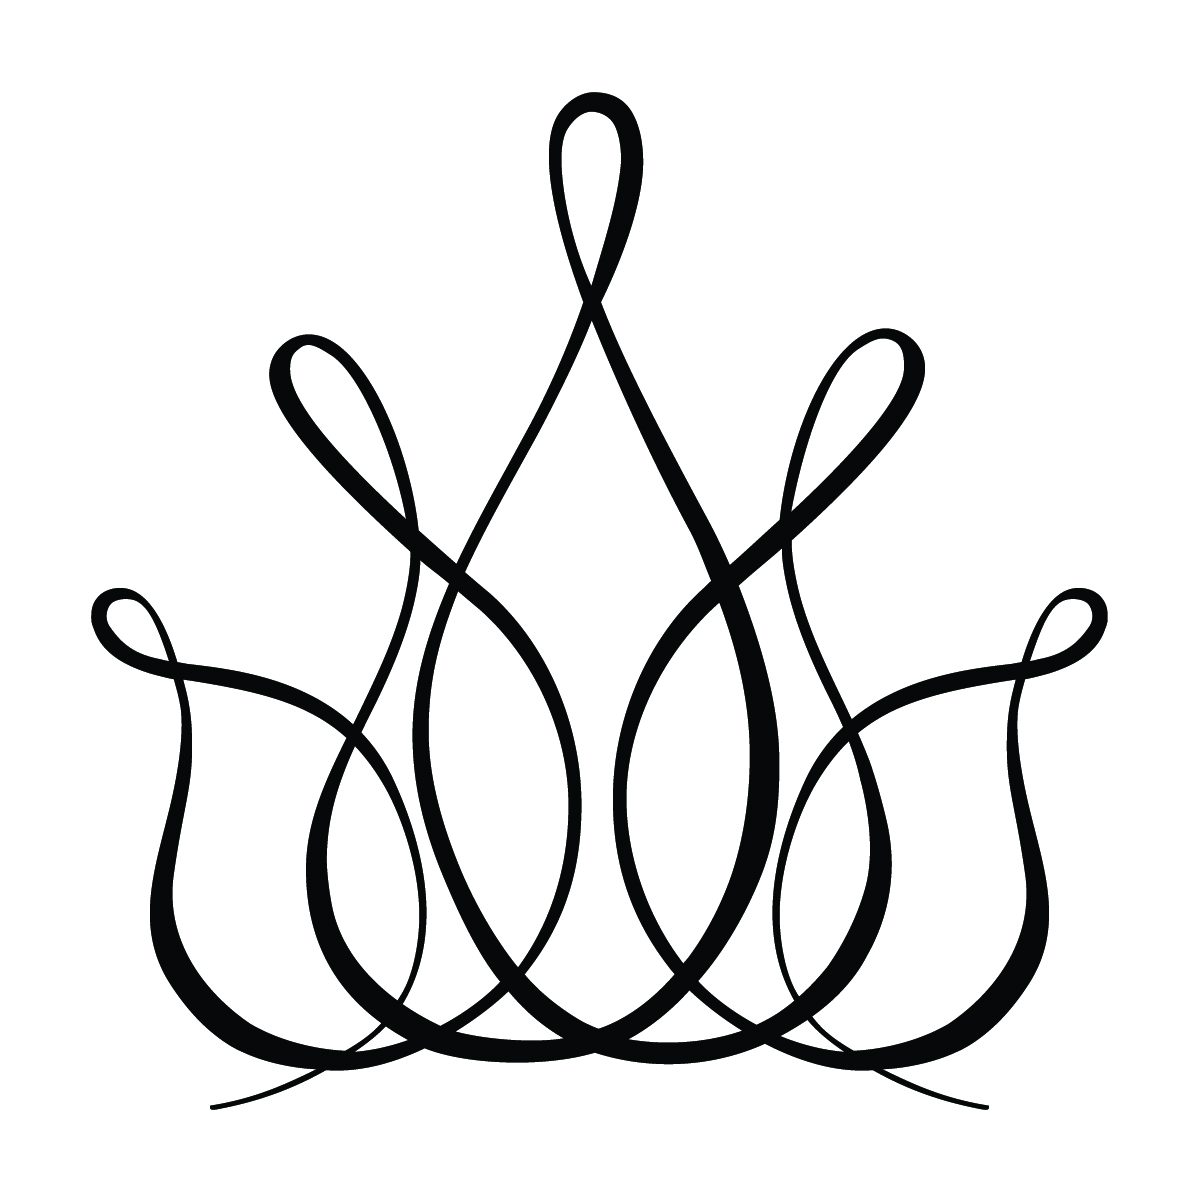 Crowns Drawings